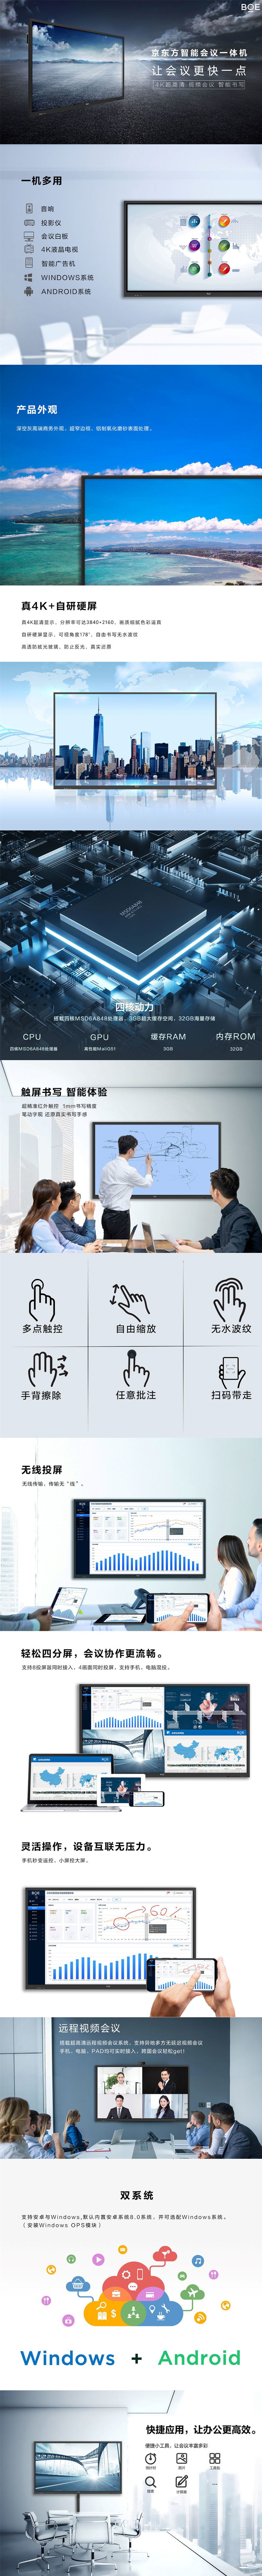 重庆视频会议系统